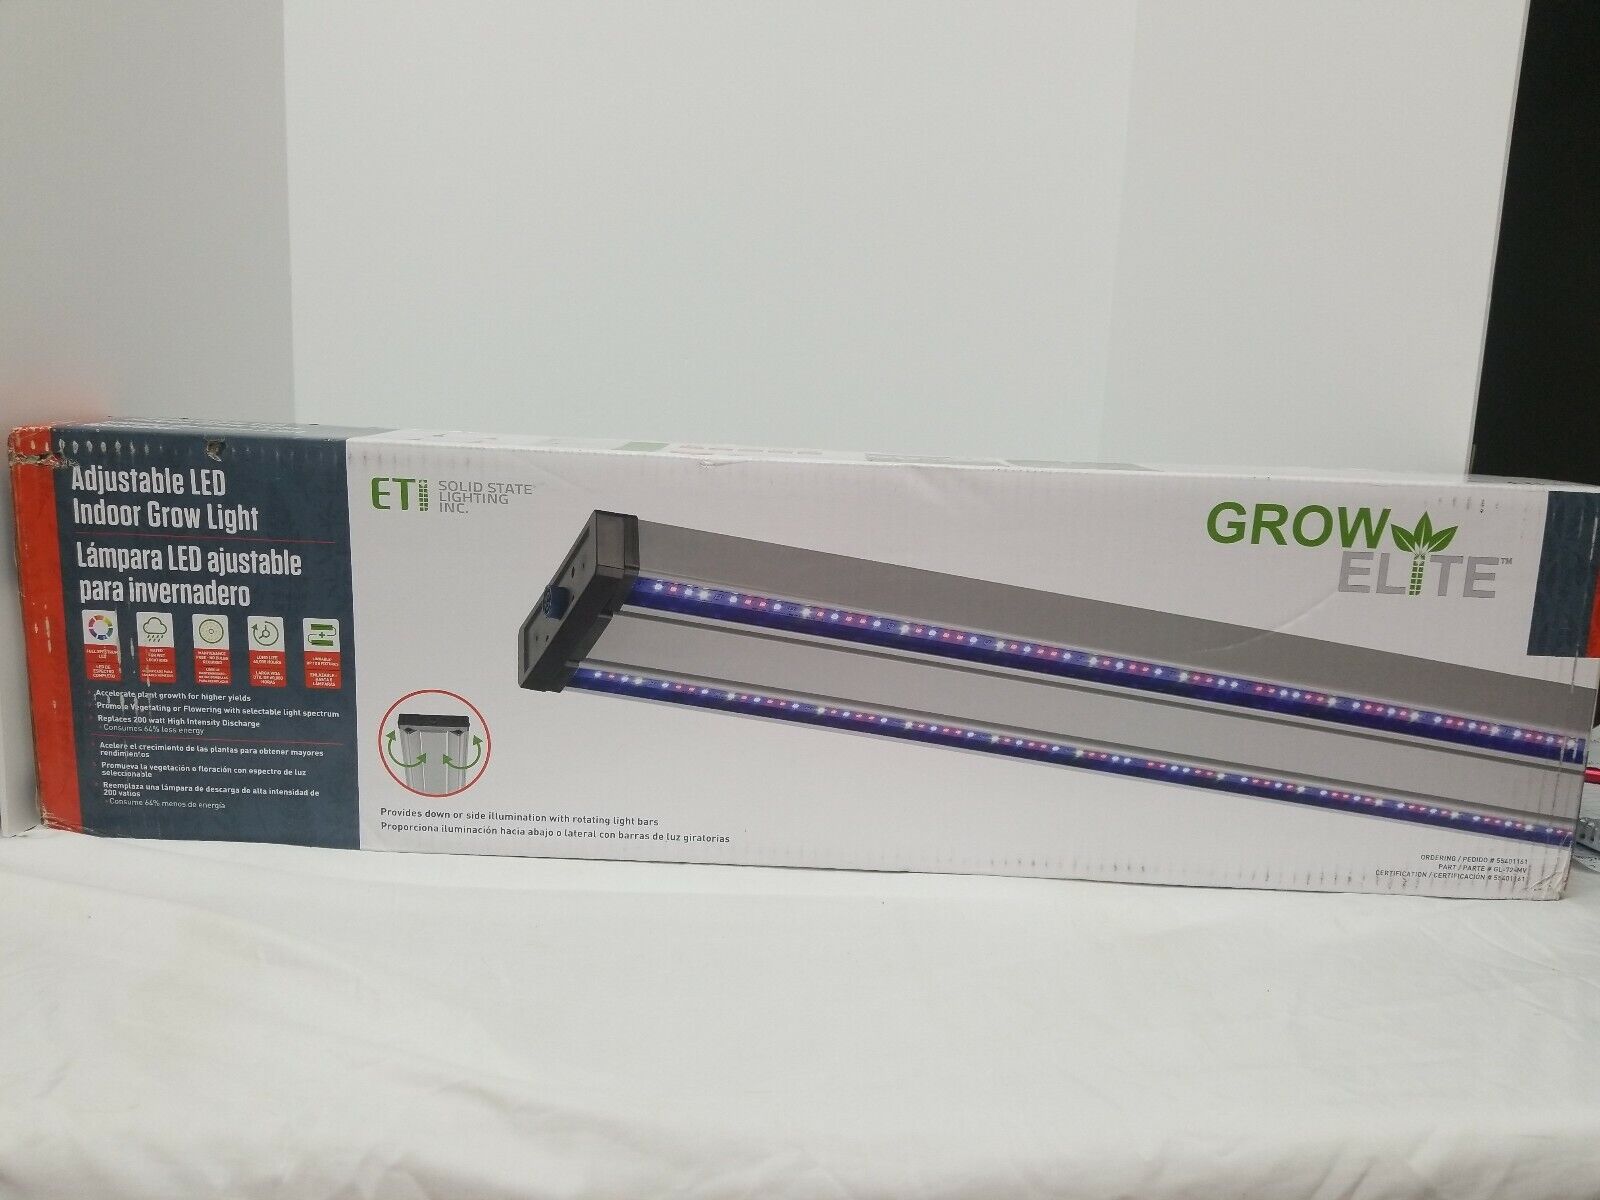 ETI 72W GrowElite LED Linkable Grow Light, Adjustable, 200W HID Retrofit, 108 lm